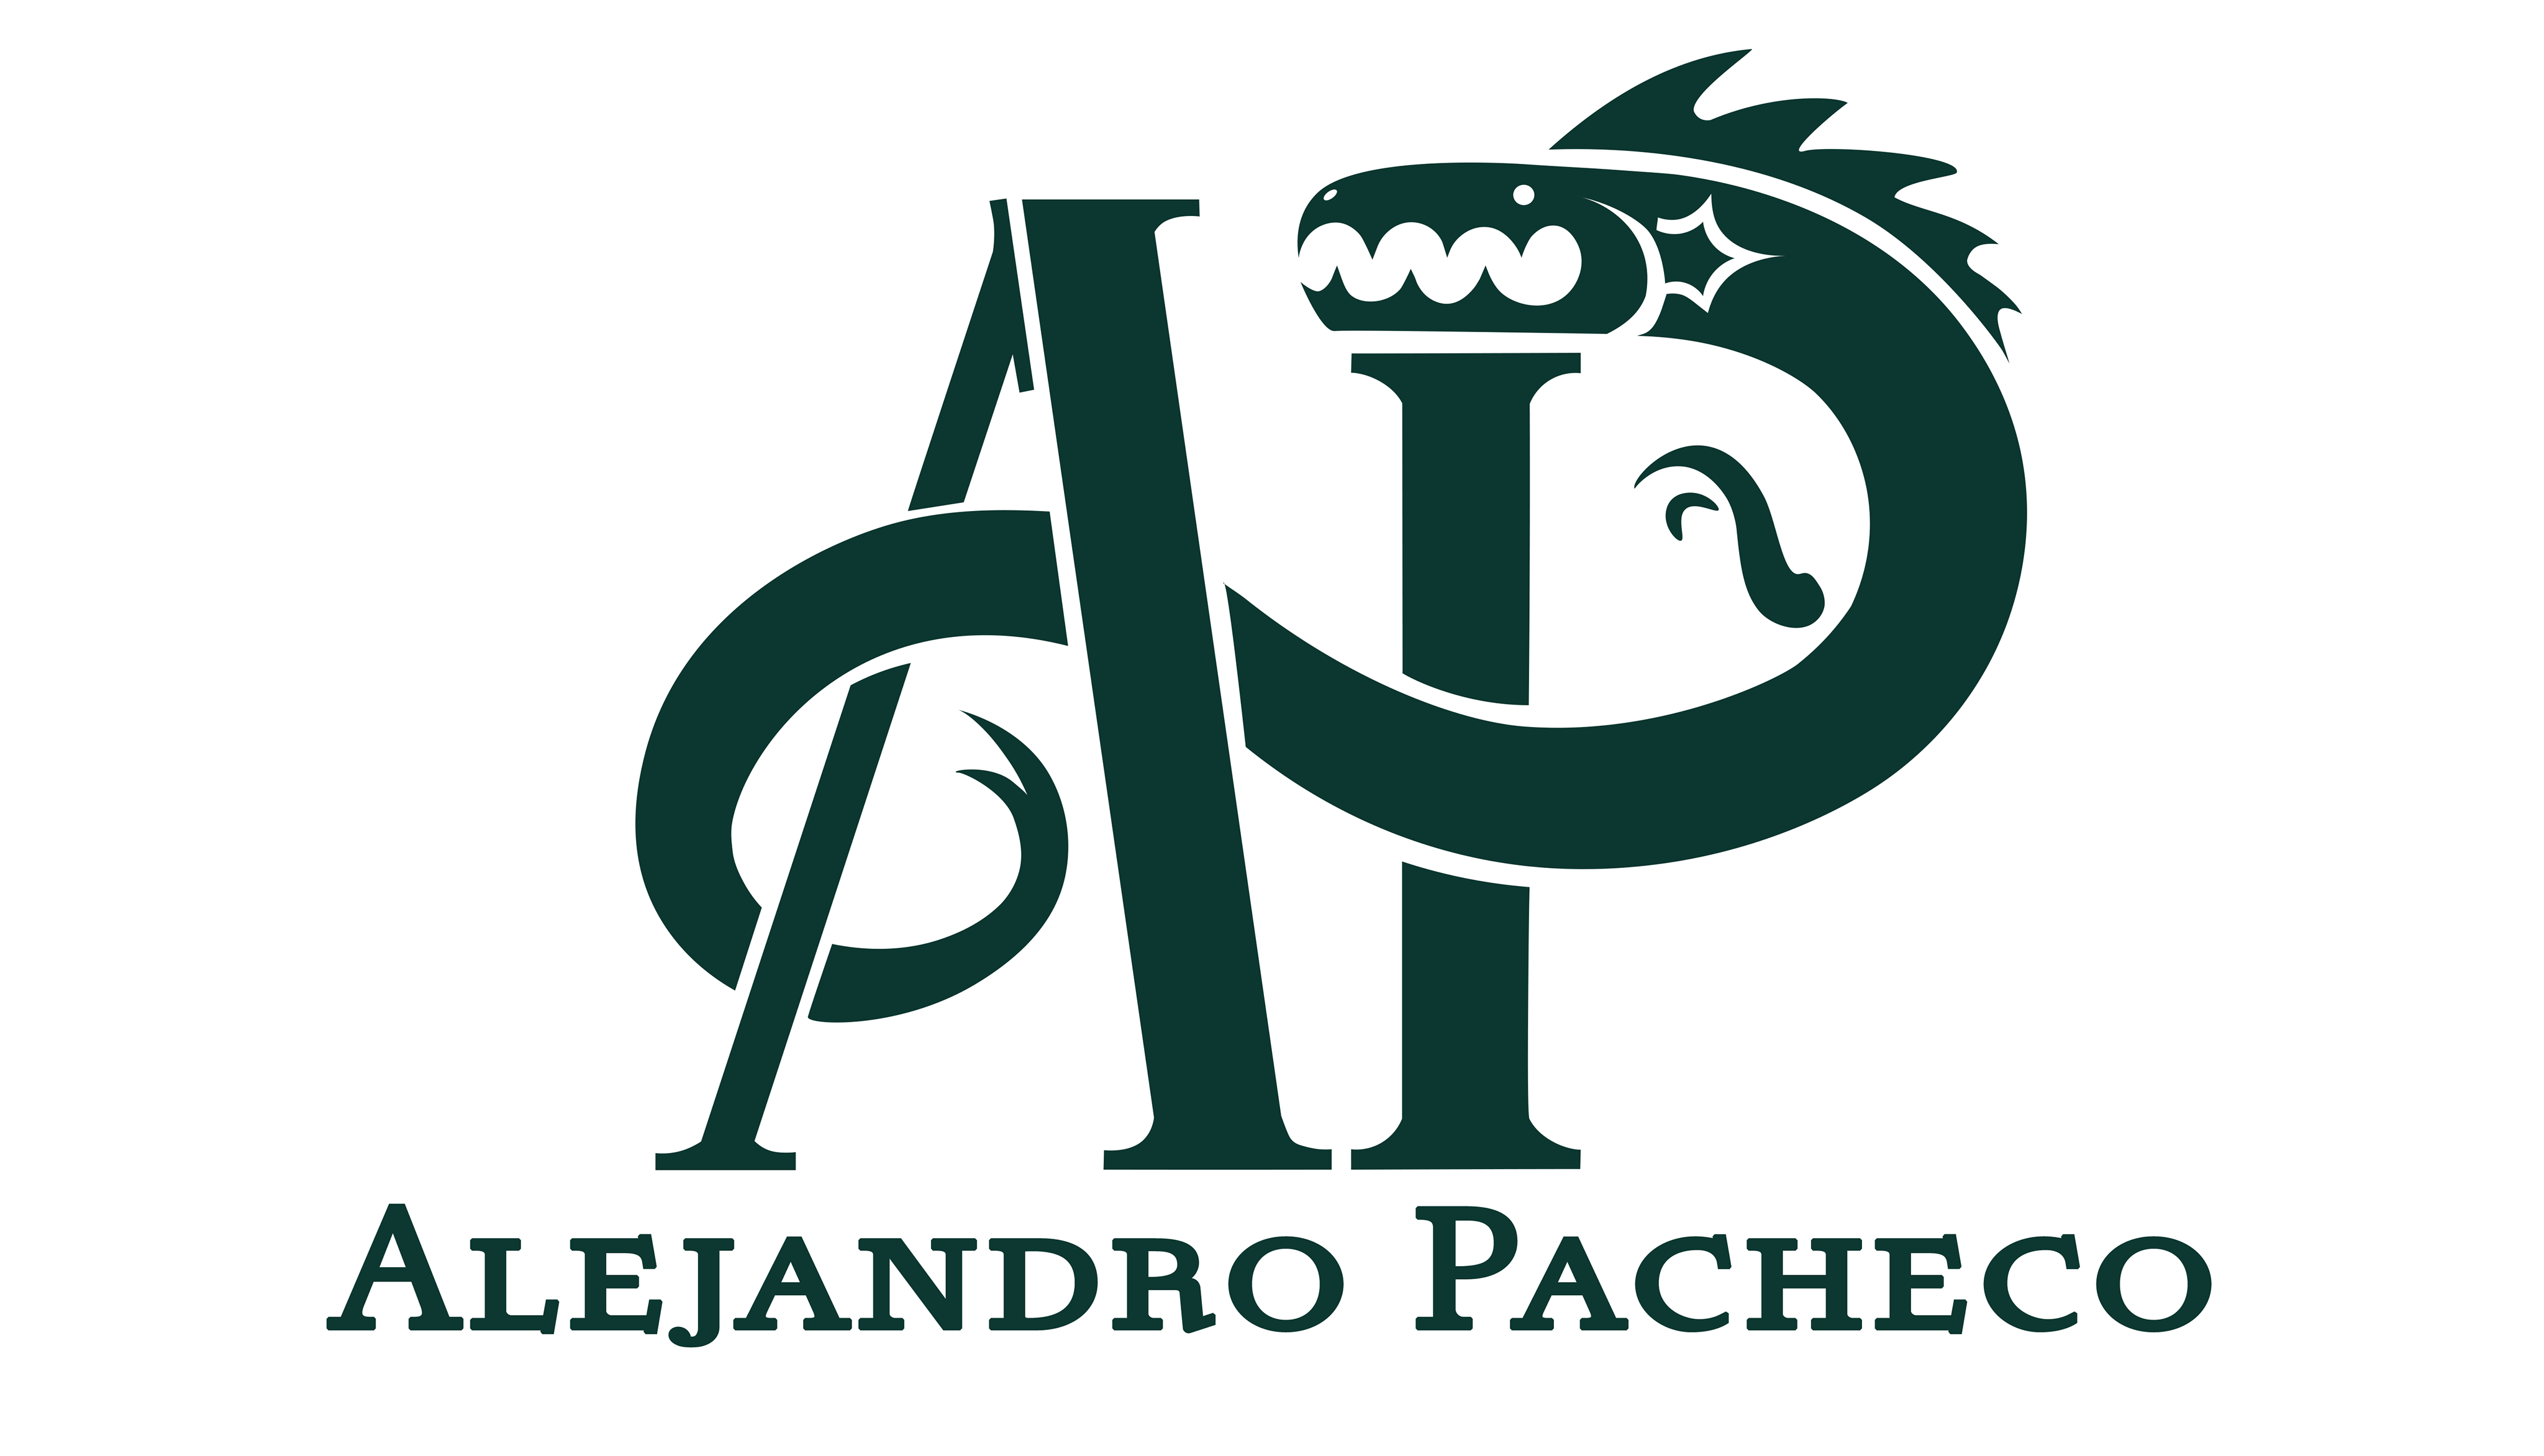 Alejandro Pacheco